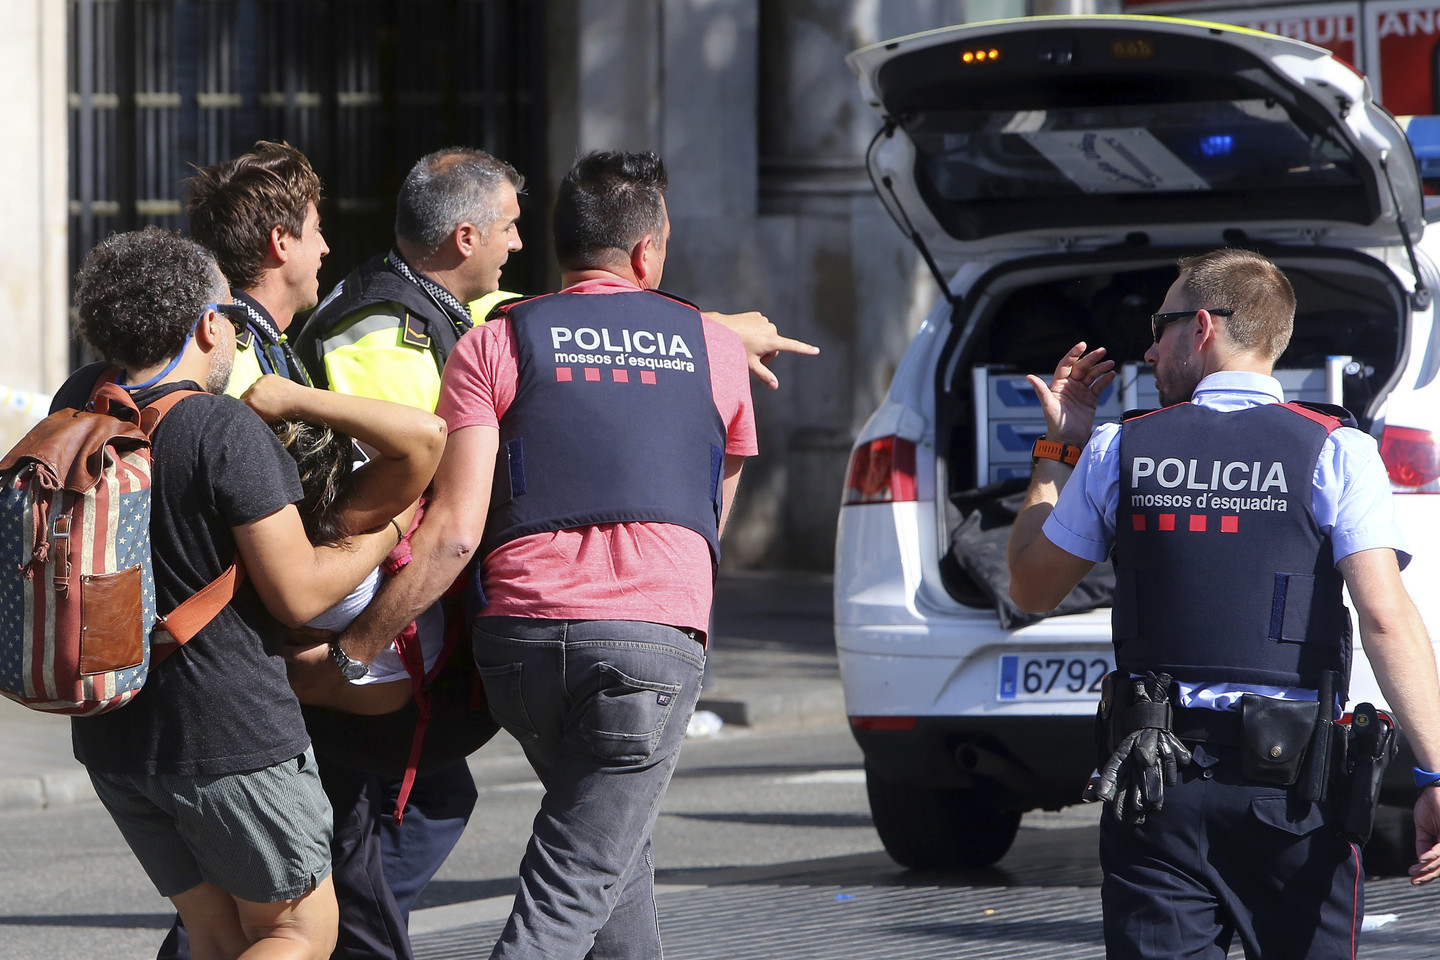  Barselonoje teroristai nukreipė furgoną į žmones. <br> AP nuotr. 